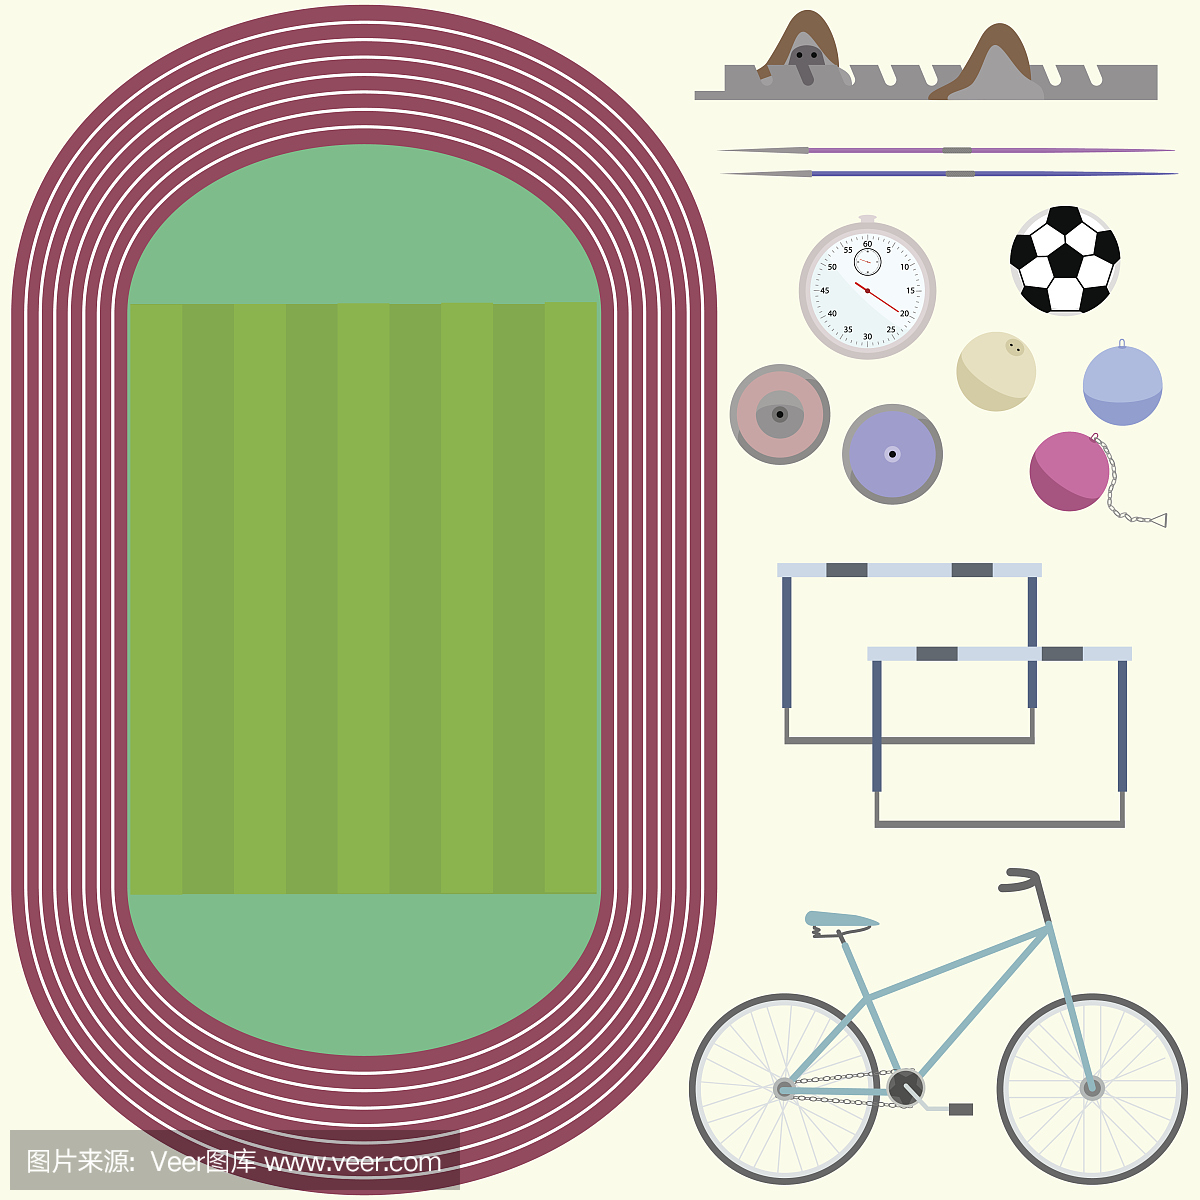 体育场,田径家具,自行车,铁饼,矛,足球,秒表,平面